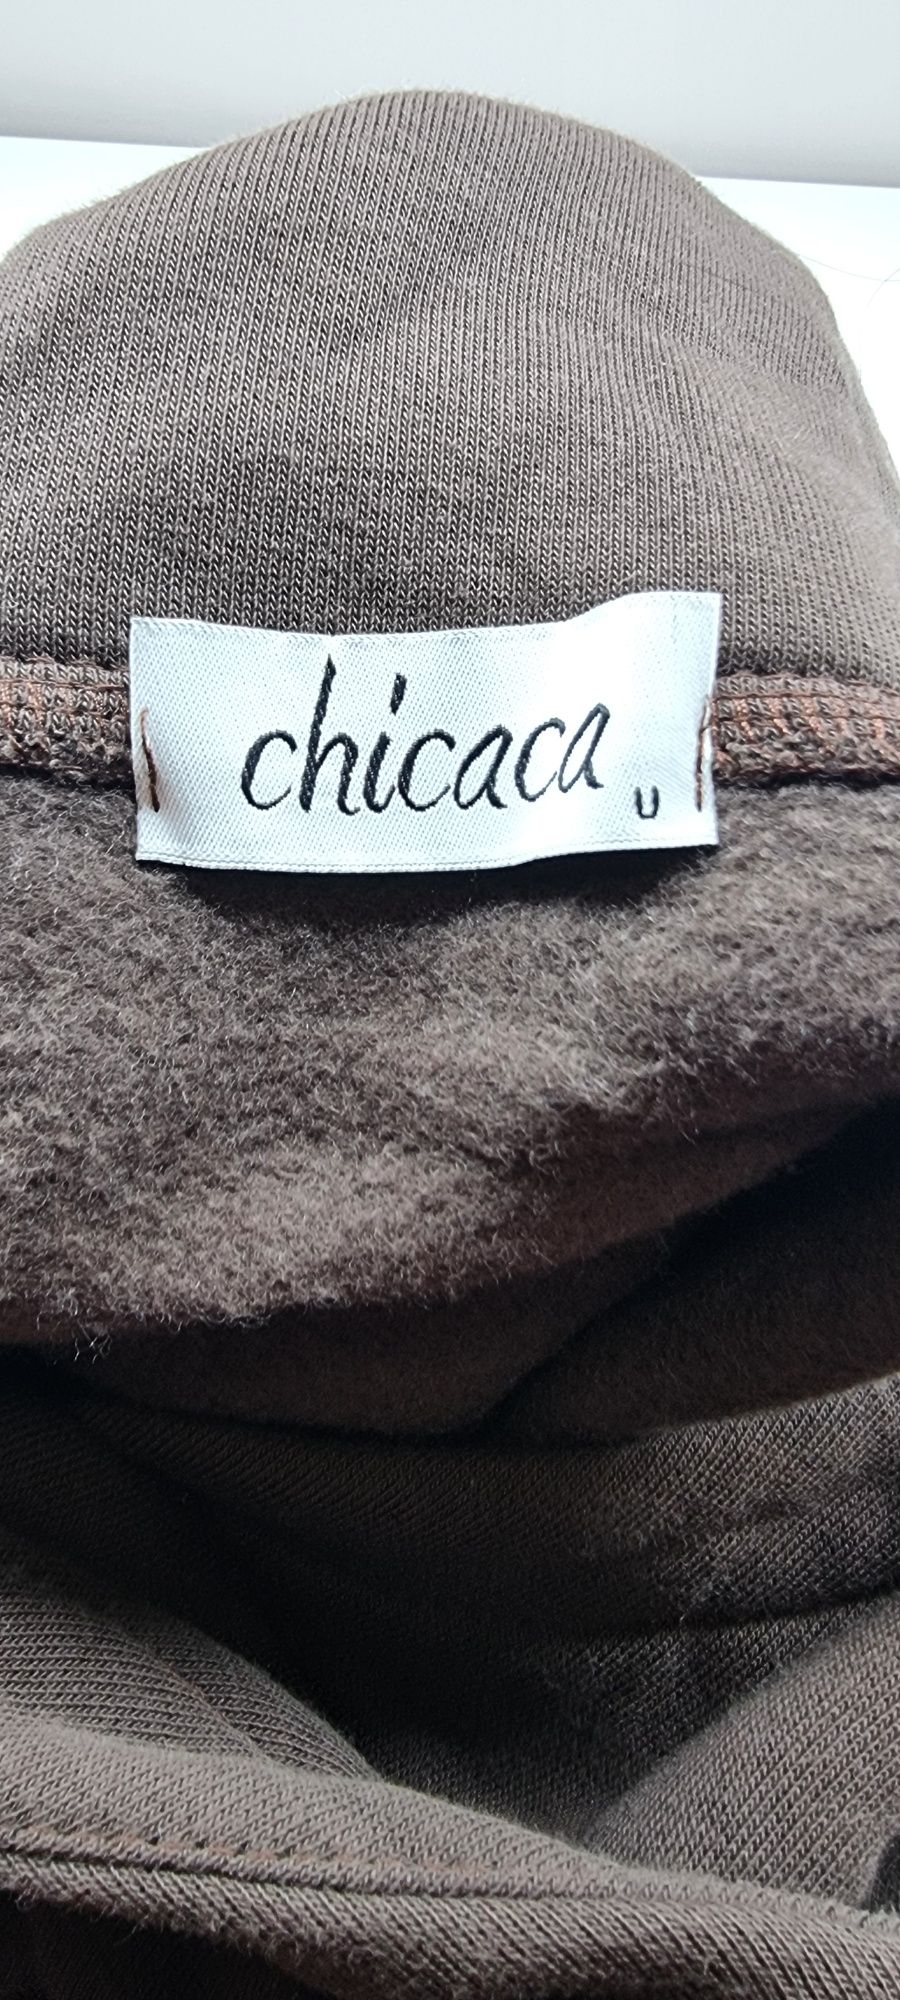 Bluza brązowa rozm uniwersalny  firmy Chicaca